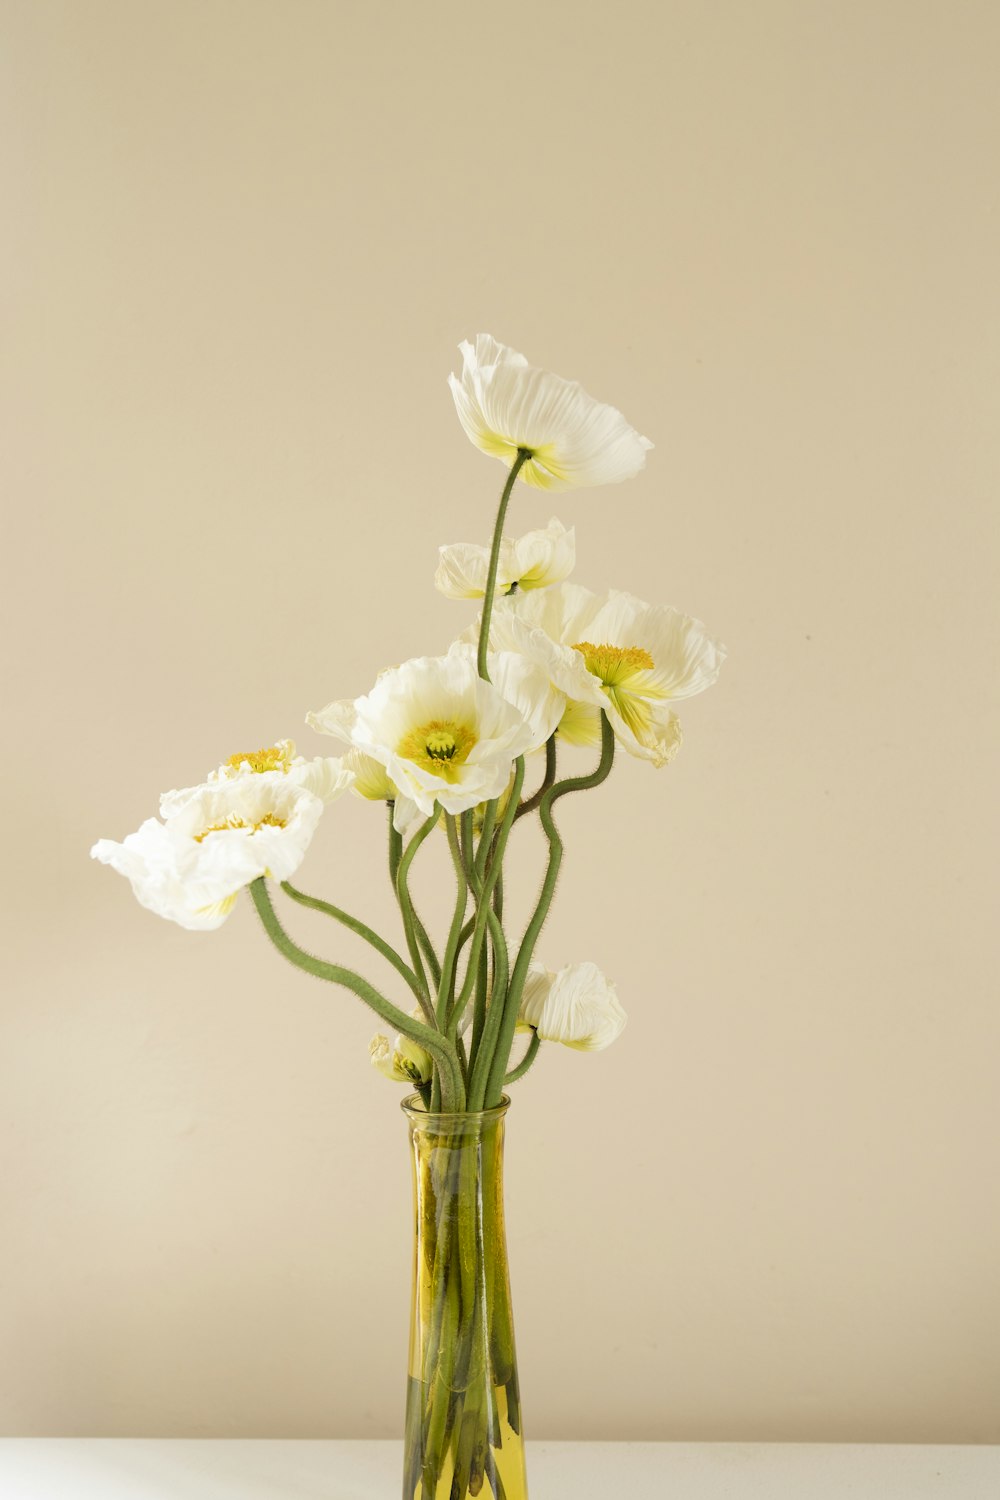 투명 유리 꽃병에 흰 나방 난초